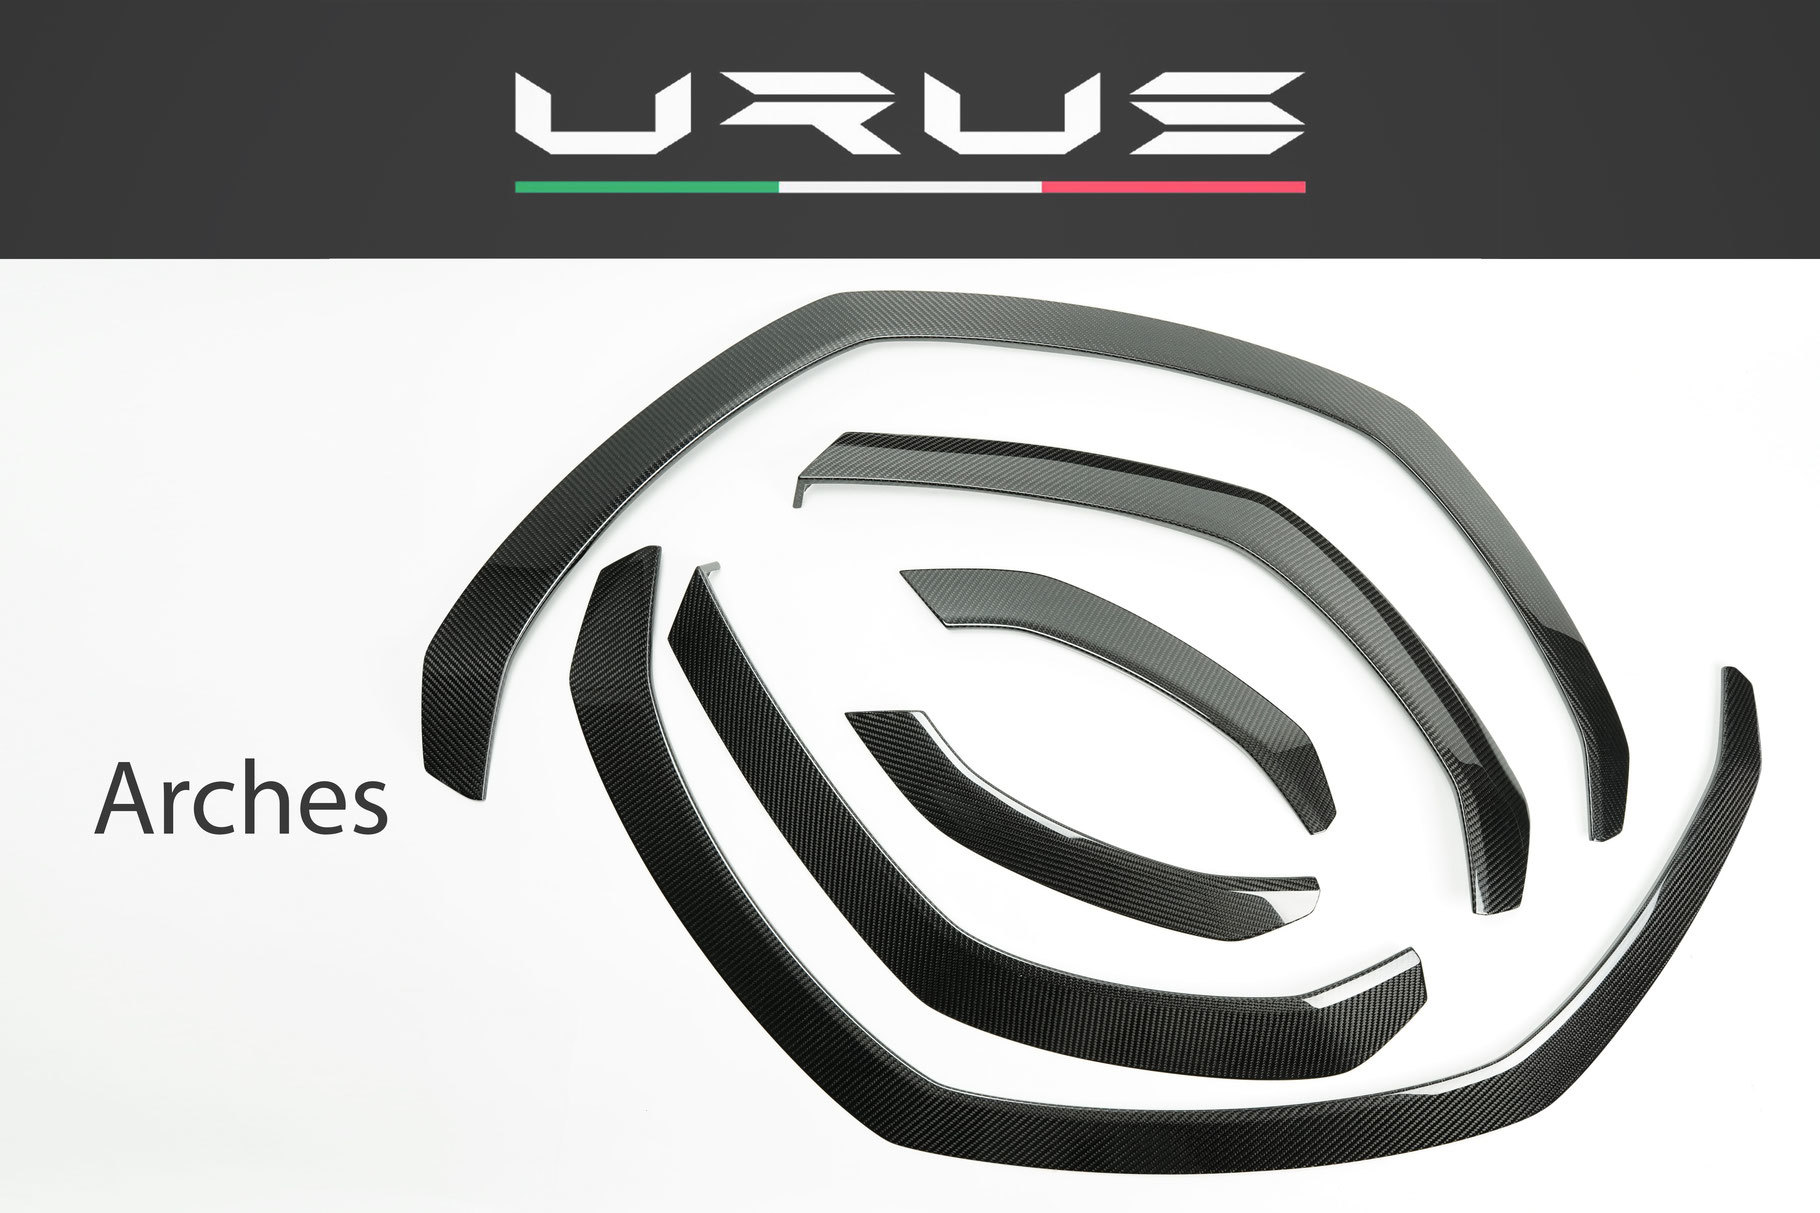 Hodoor Performance Carbon fiber arches for Lamborghini Urus